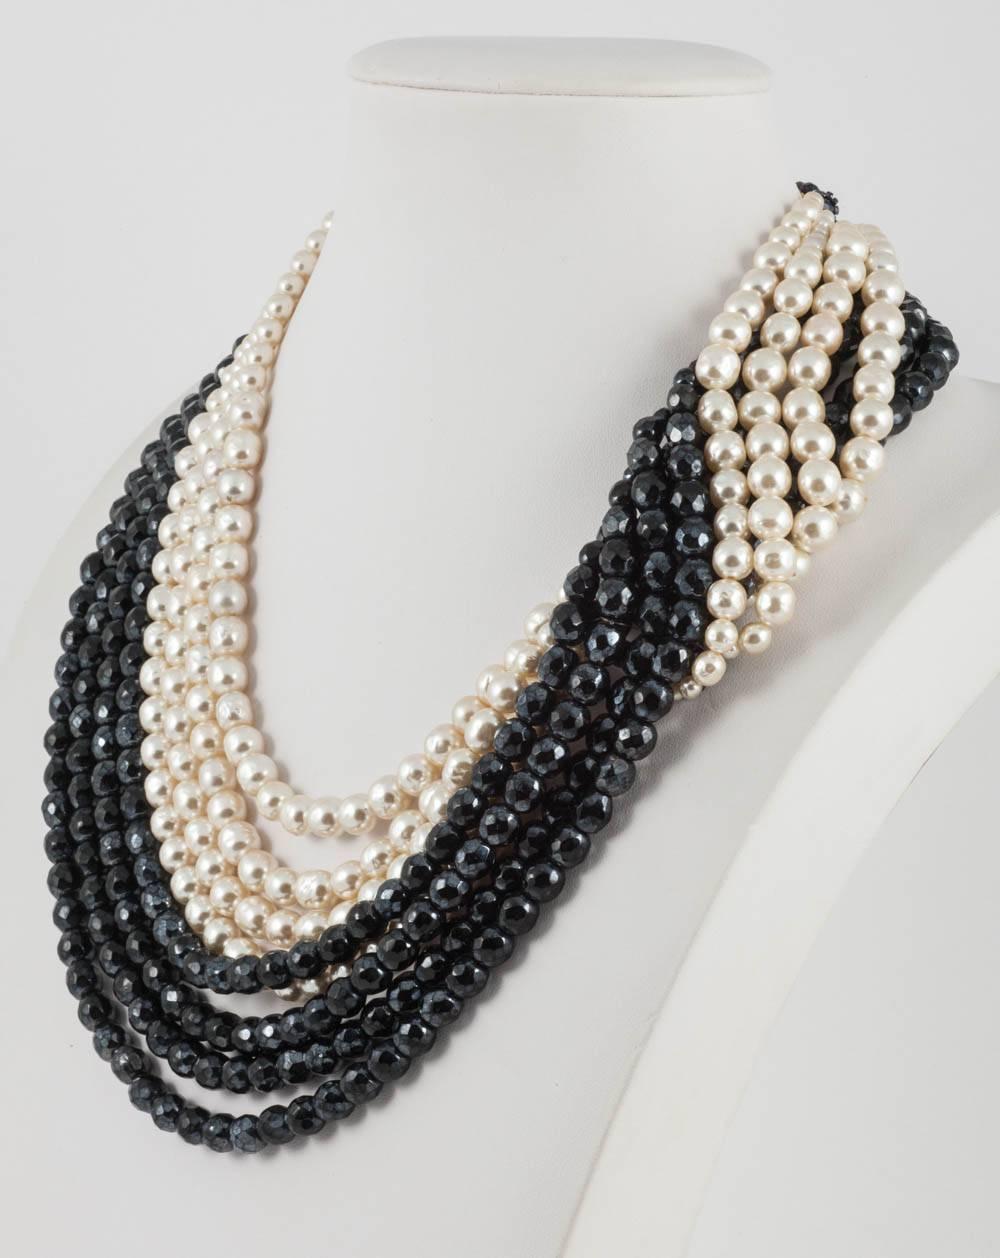 Women's  Black bead and faux cream baroque pearl 'twist' necklace, Coppola e Toppo, 1960s